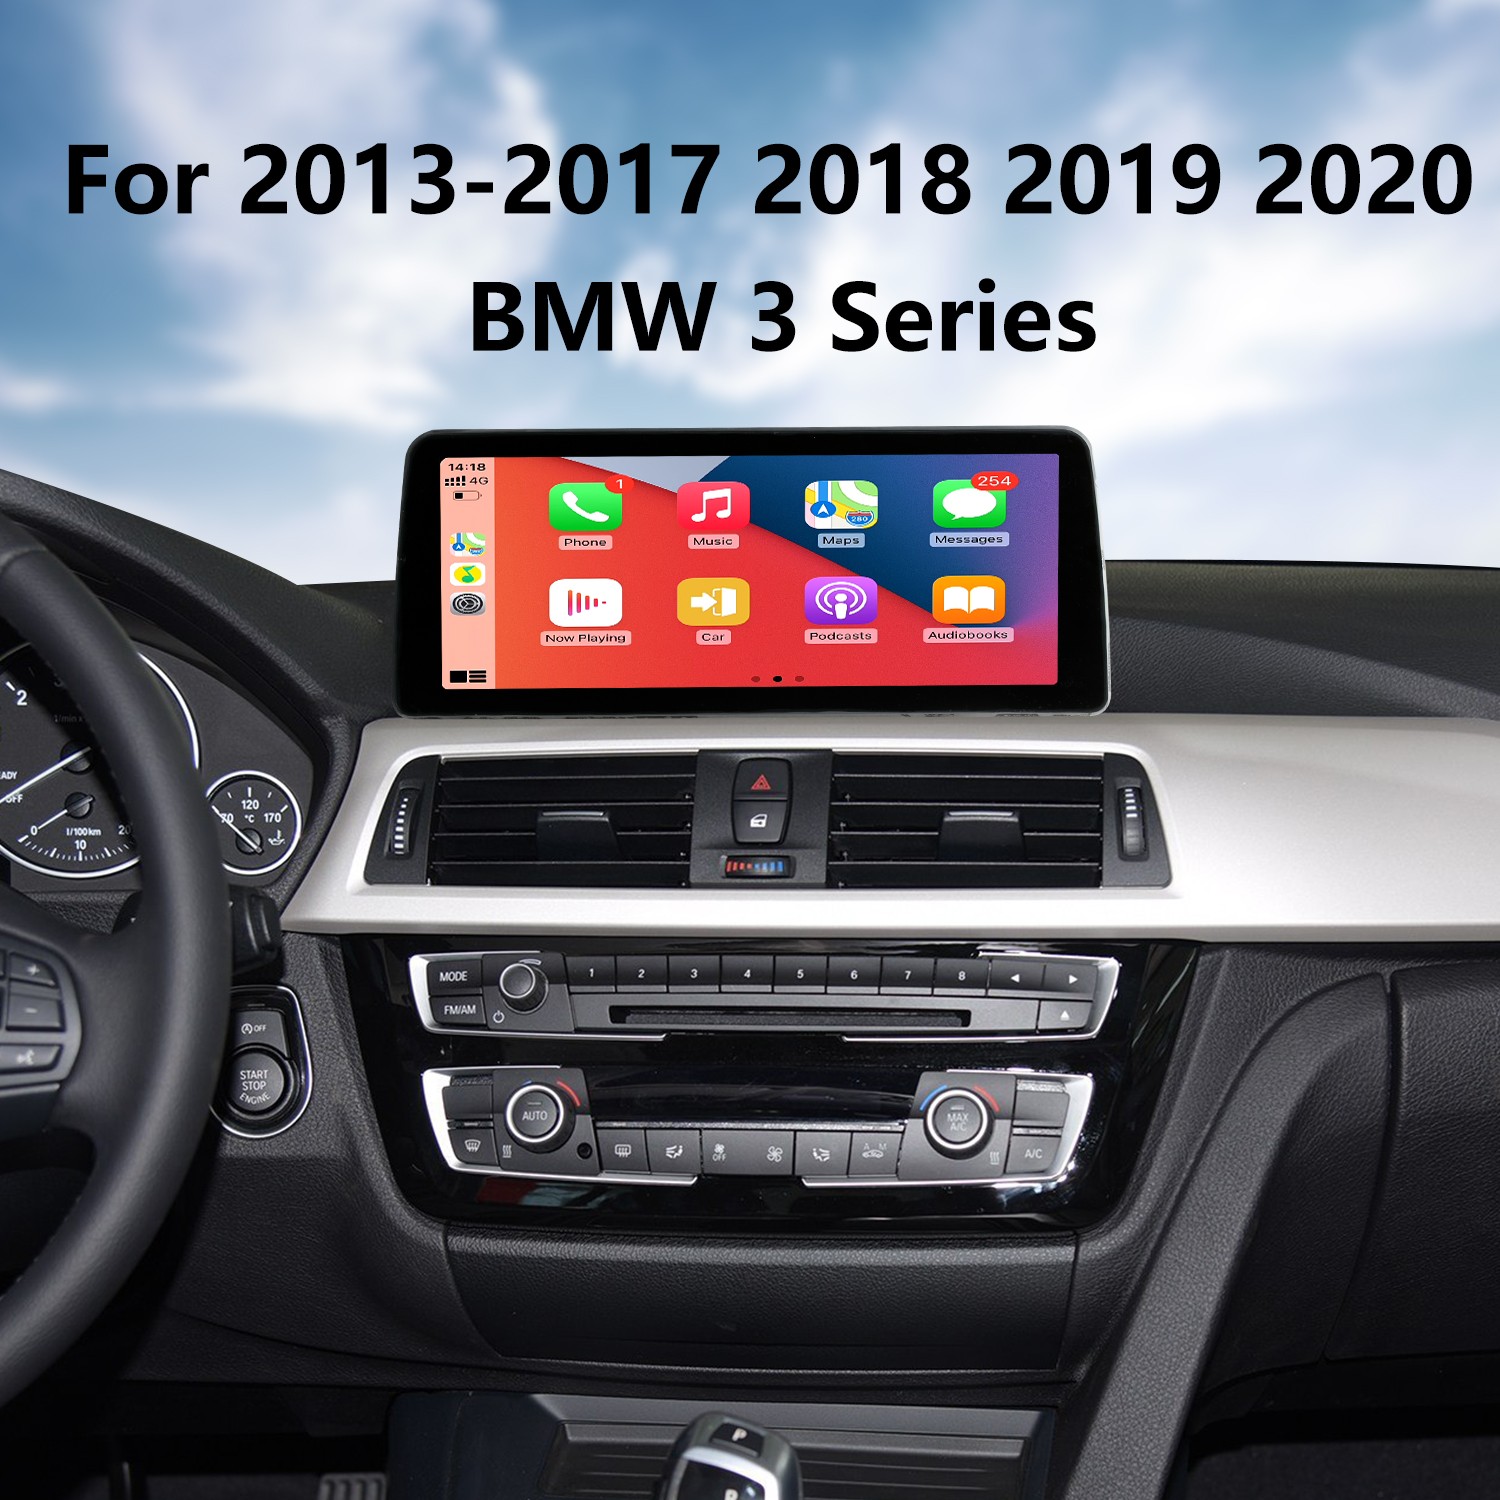 Android Auto pour RENAULT de 2014 à 2019